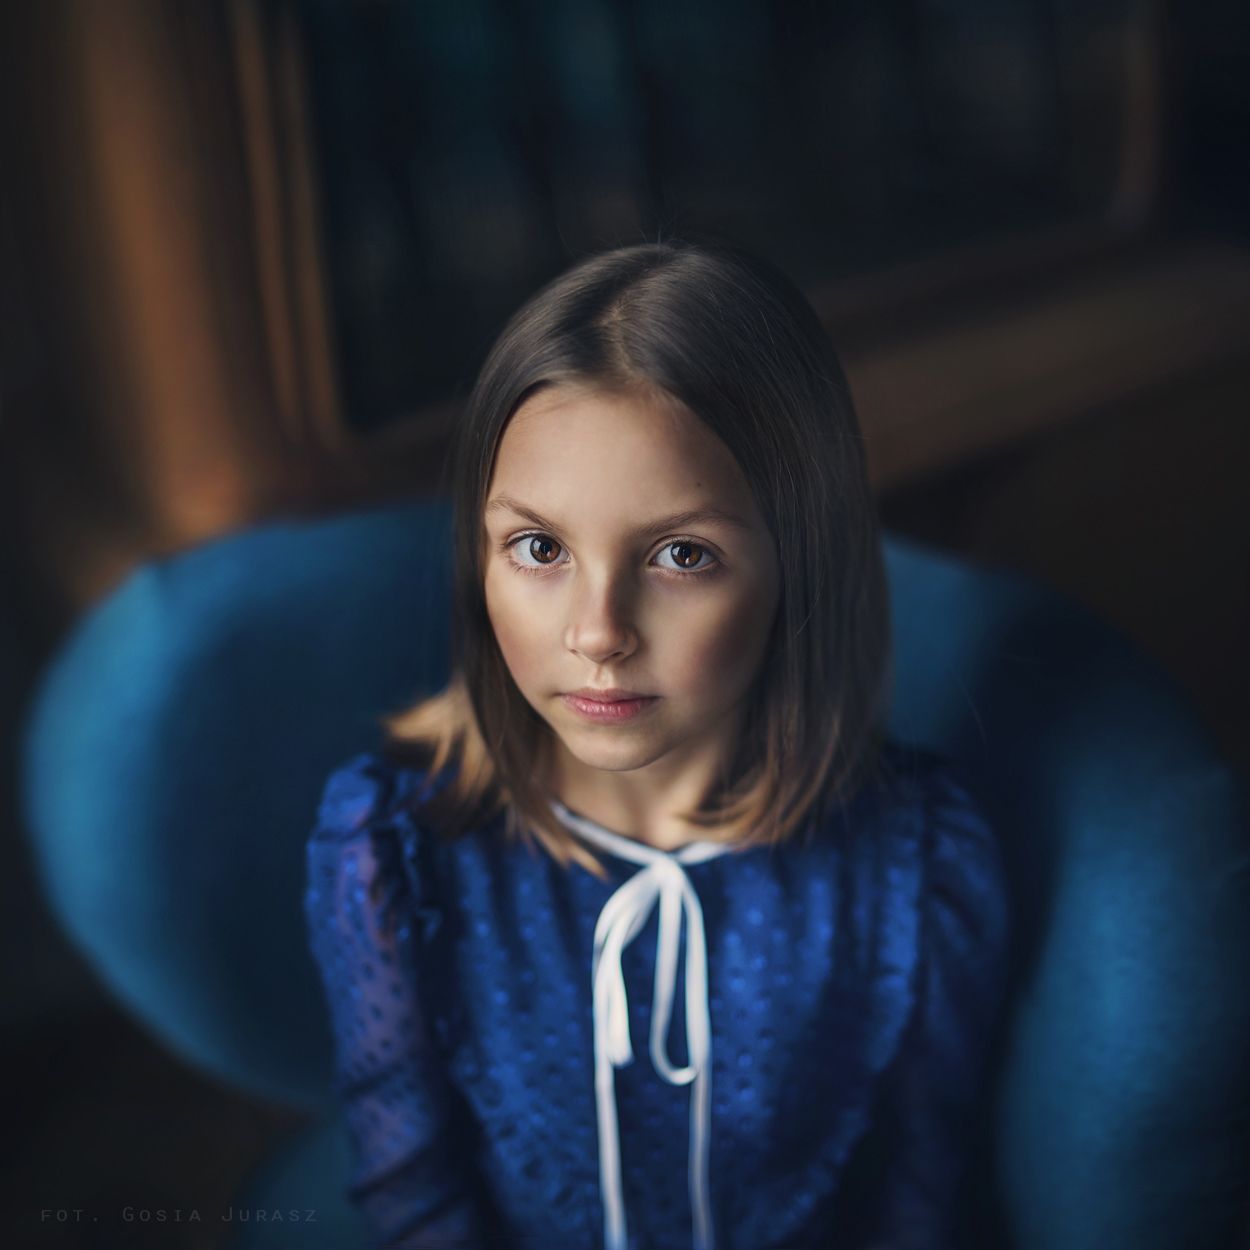 35photo, portrait, gosiajurasz, girl, portret, девушка, портрет, Gosia Jurasz